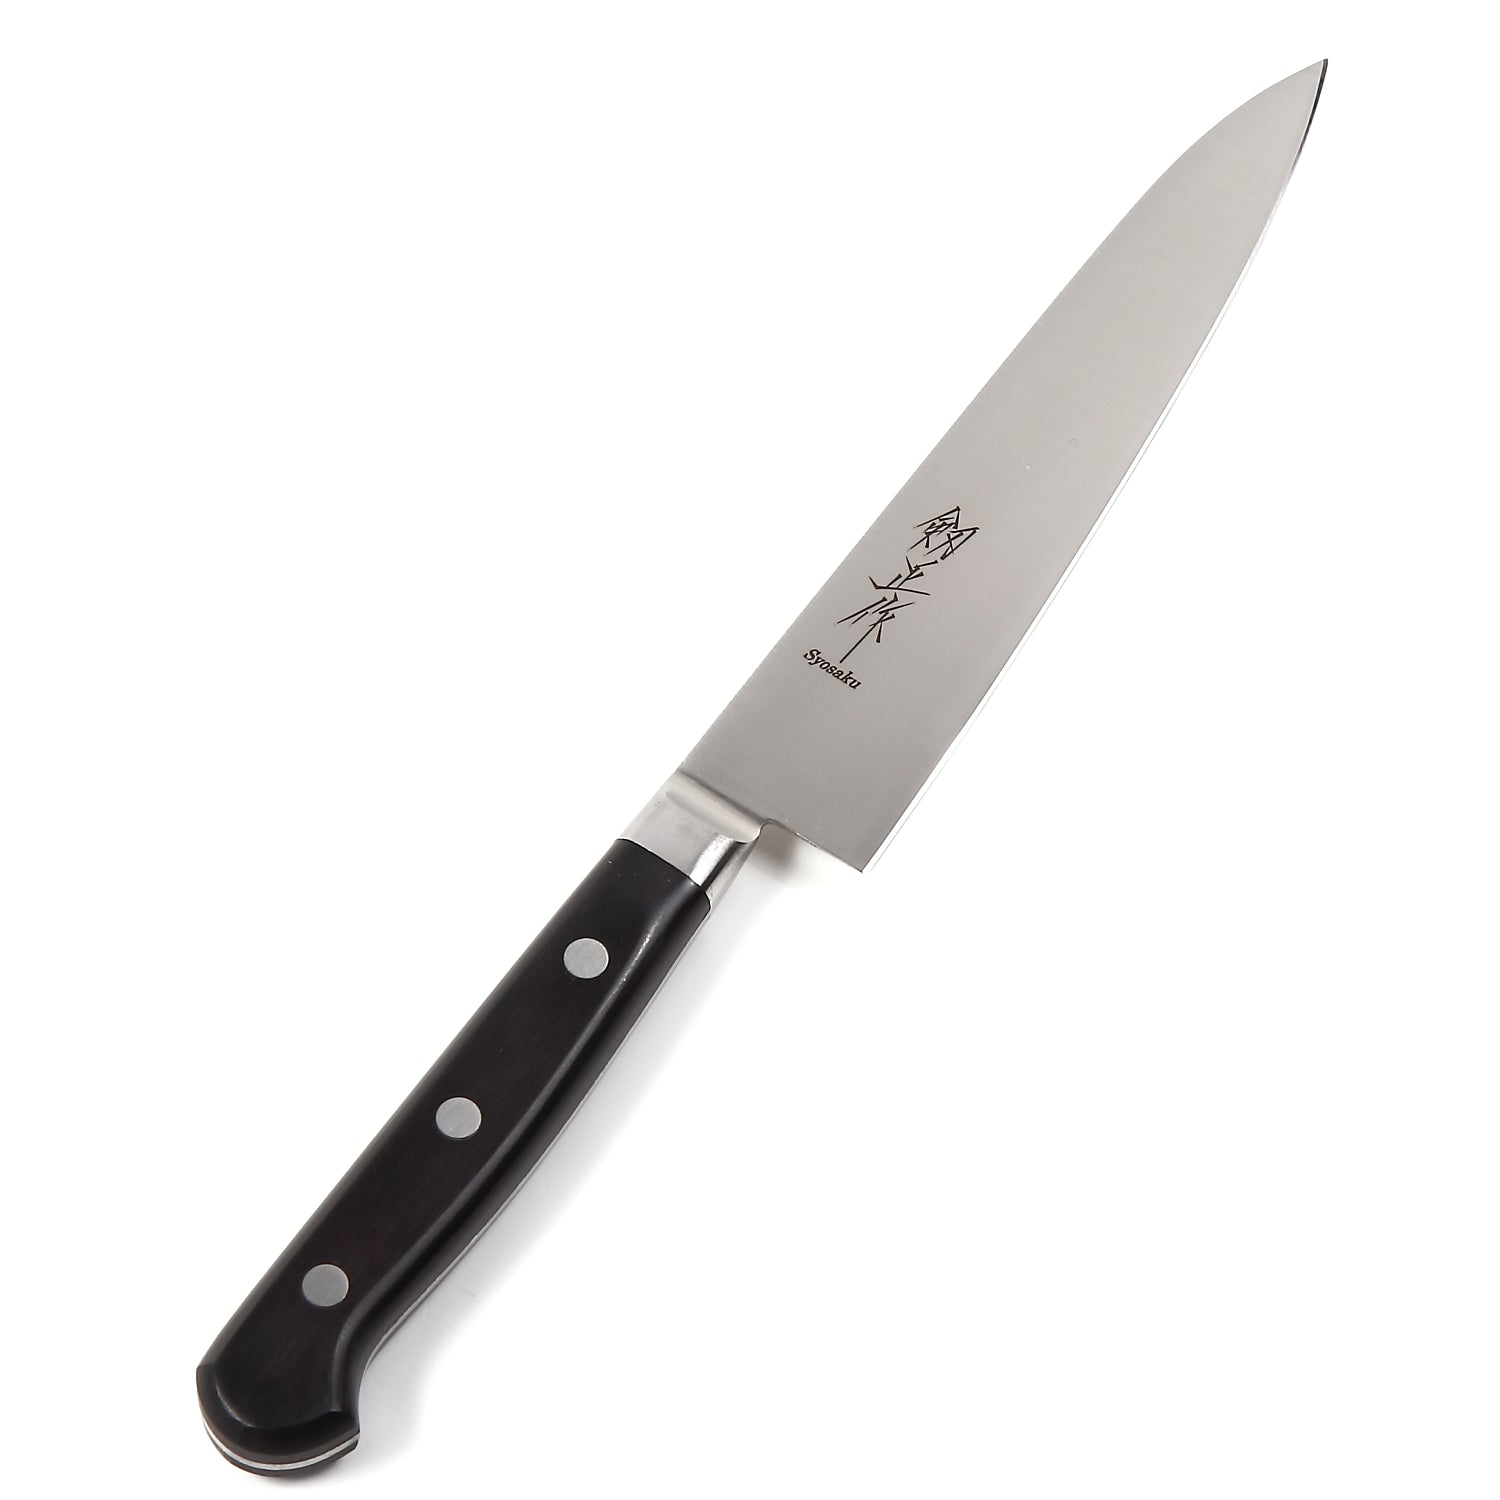 Syosaku Japanese Petty Knife INOX AUS-8A Stainless Steel Black Pakkawood Handle, 6-inch (150mm)